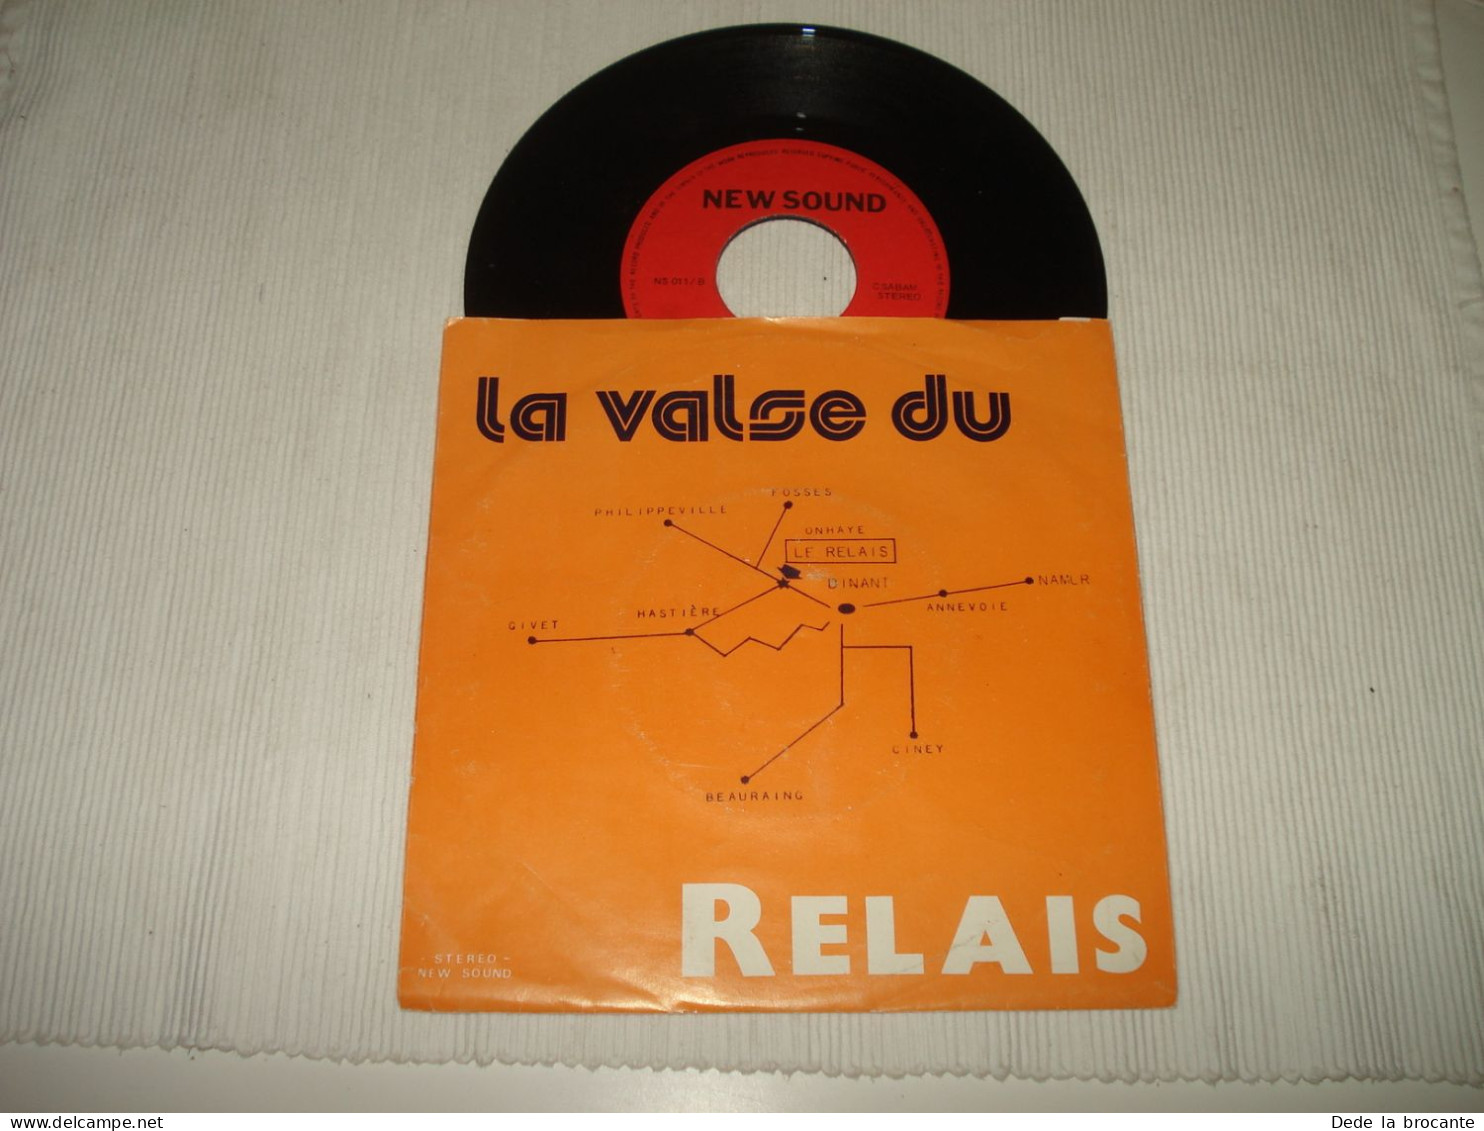 B14 / DEDICACE - Marcel Nihoul – La Valse Du Relais – NS 011 - BE 19??  VG+/EX - Disco & Pop